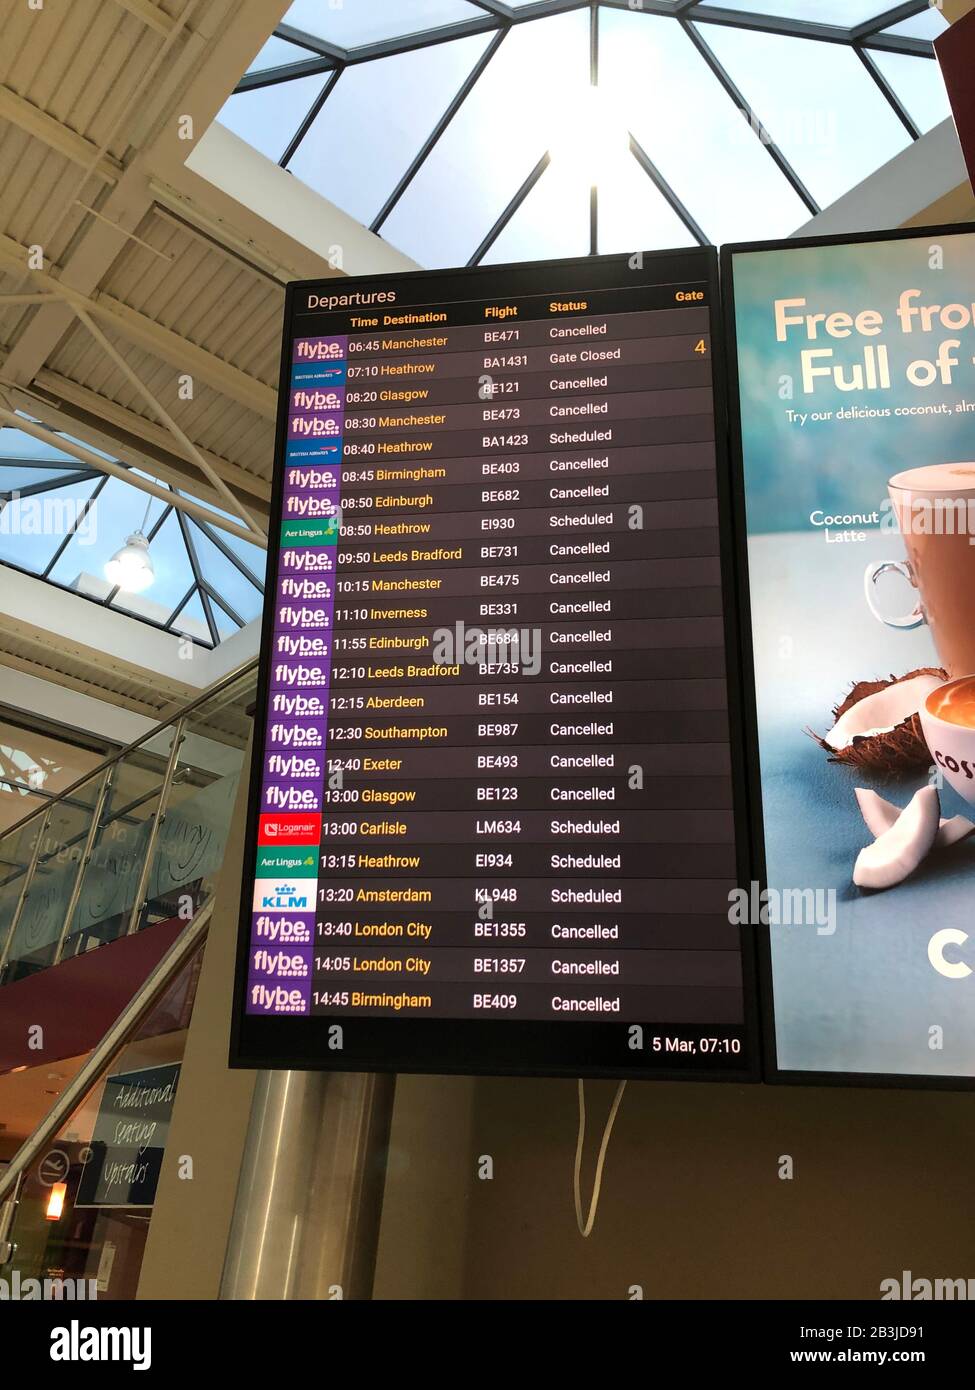 Die Flugabflugstafeln, die stornierte Flüge am Flughafen Belfast als Flybe, Europas größte regionale Fluggesellschaft, zeigen, sind in die Verwaltung eingebrochen. Stockfoto